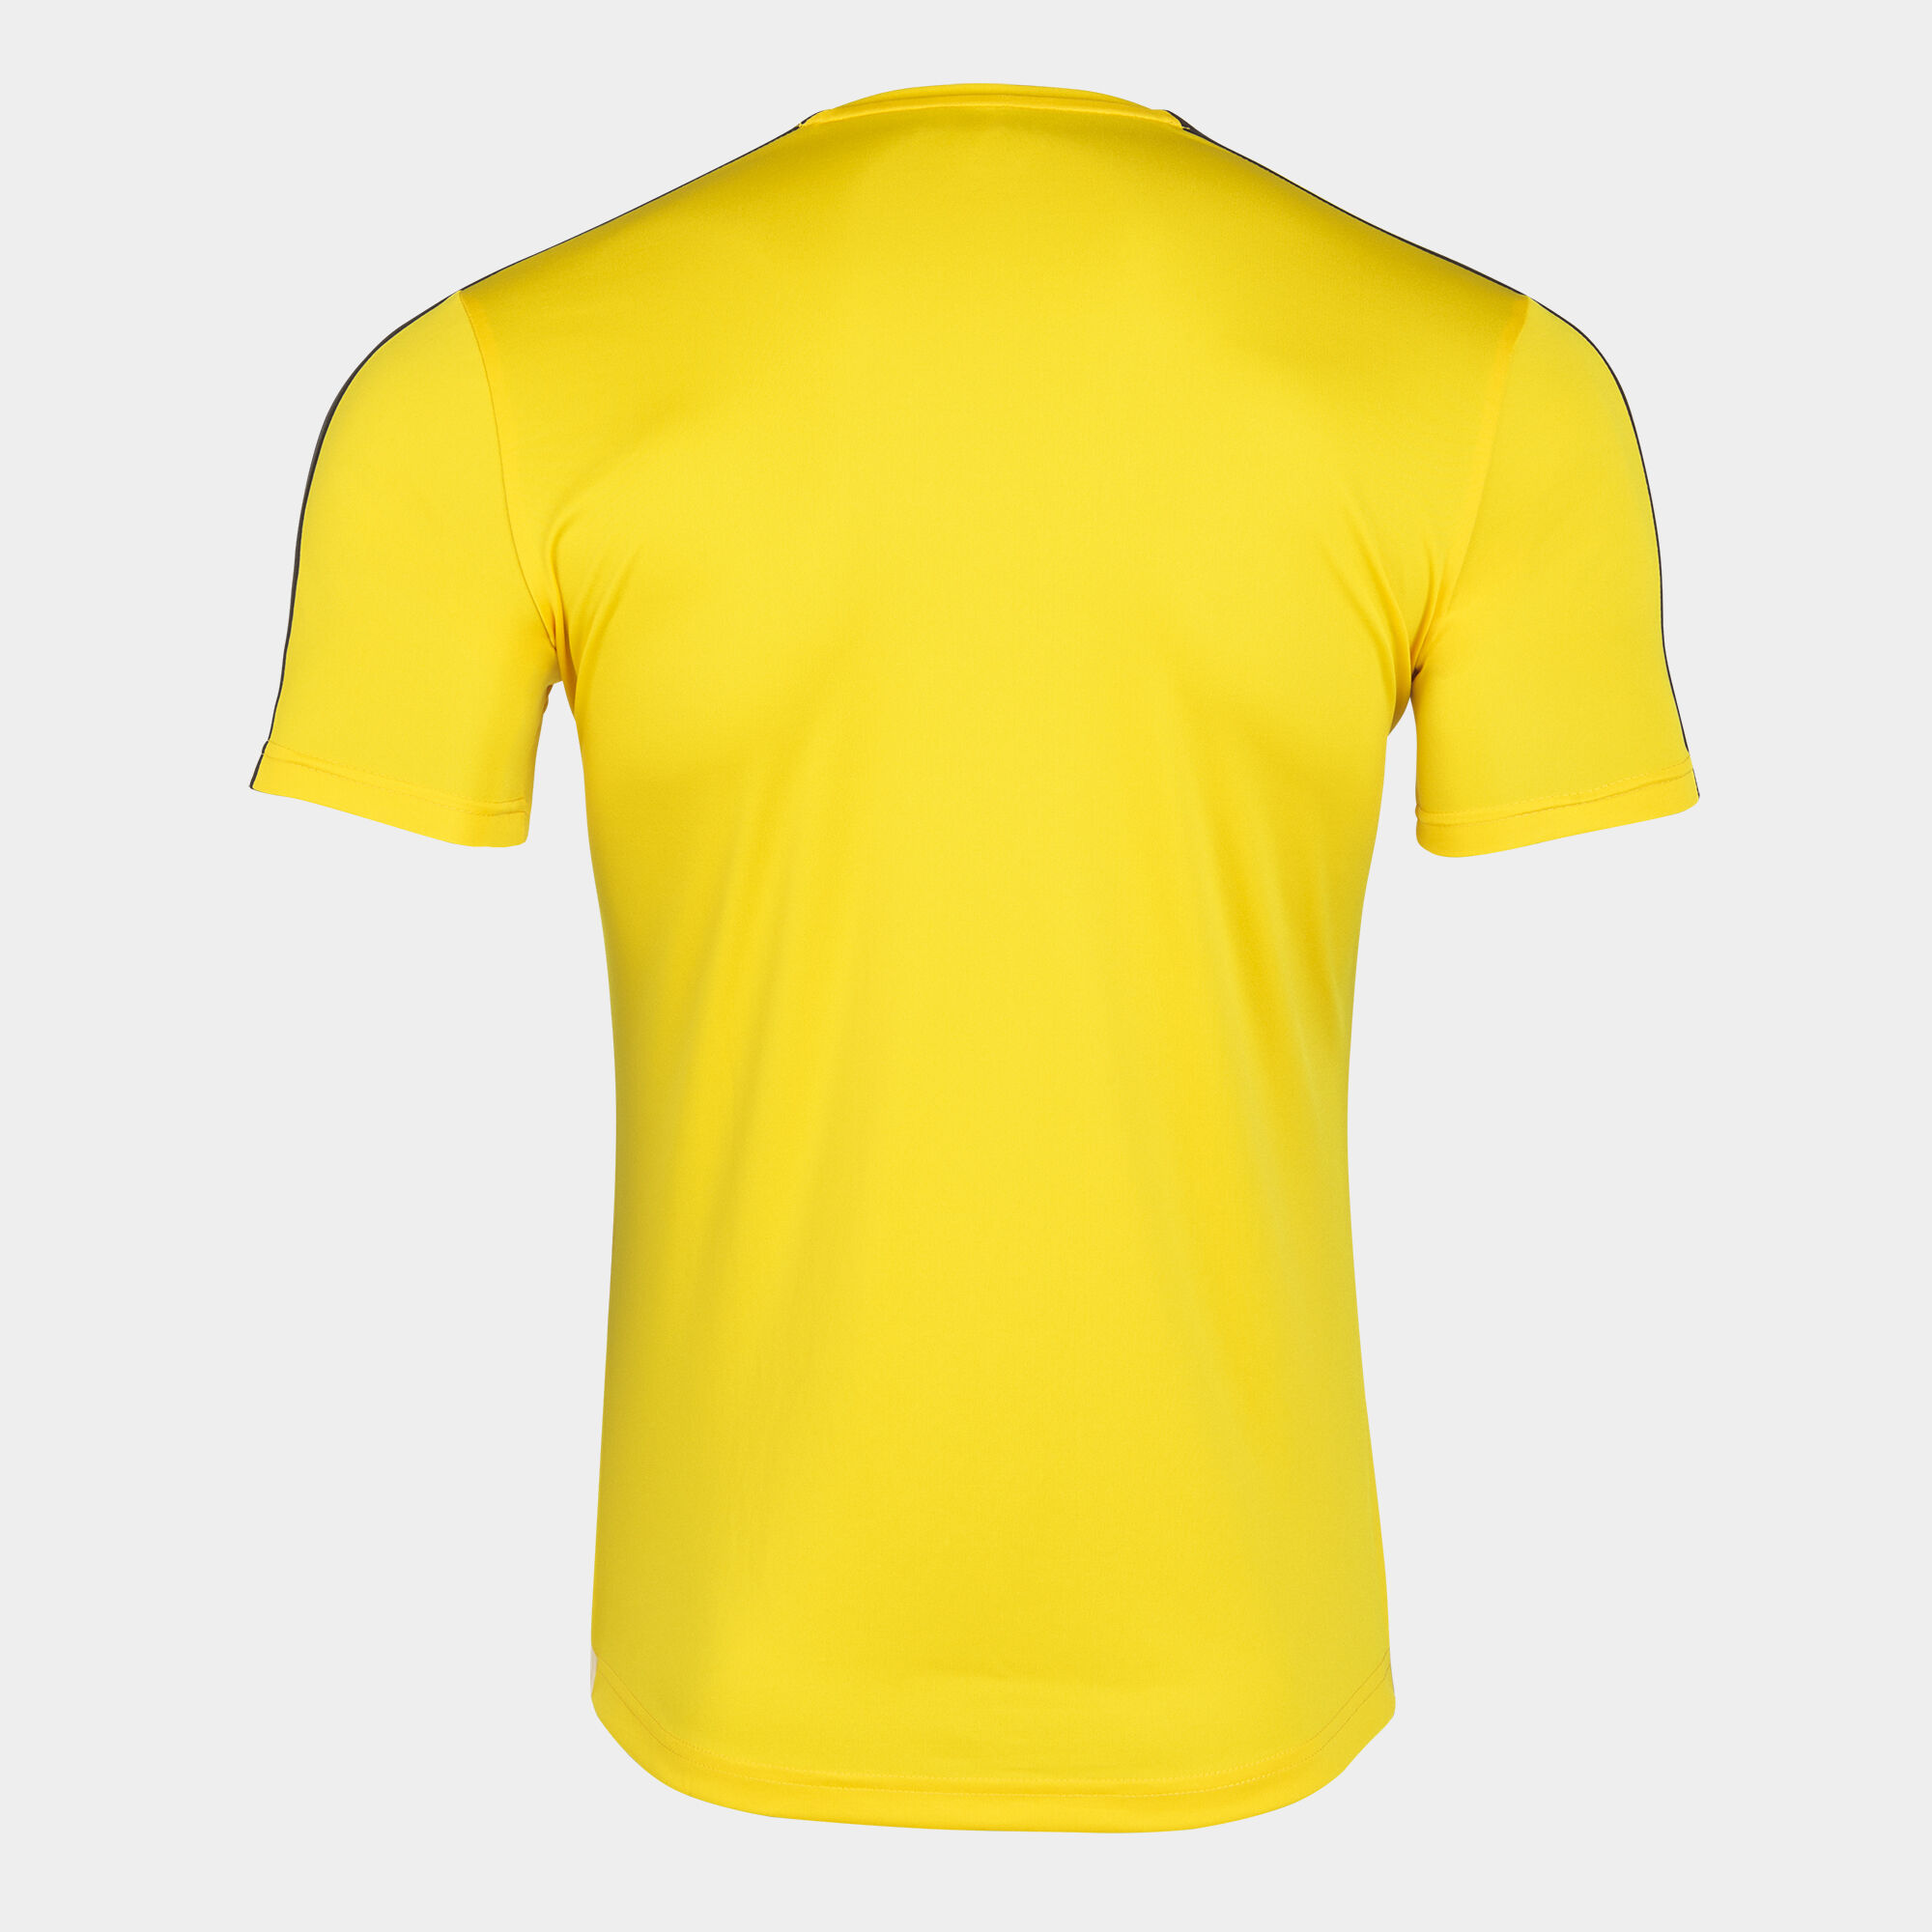 Joma Academy III Camiseta de Tenis Niño - Yellow/Black